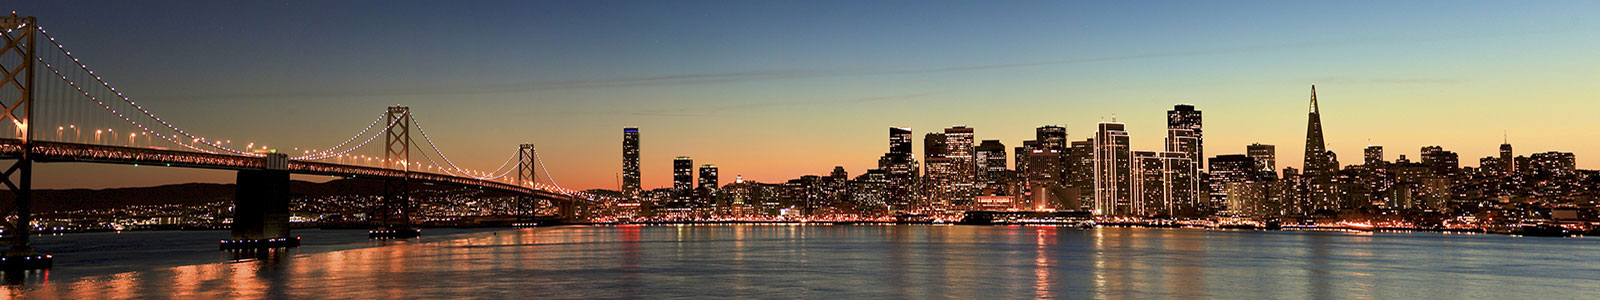 №757 - Красивый вид на Сан-Франциско после заката